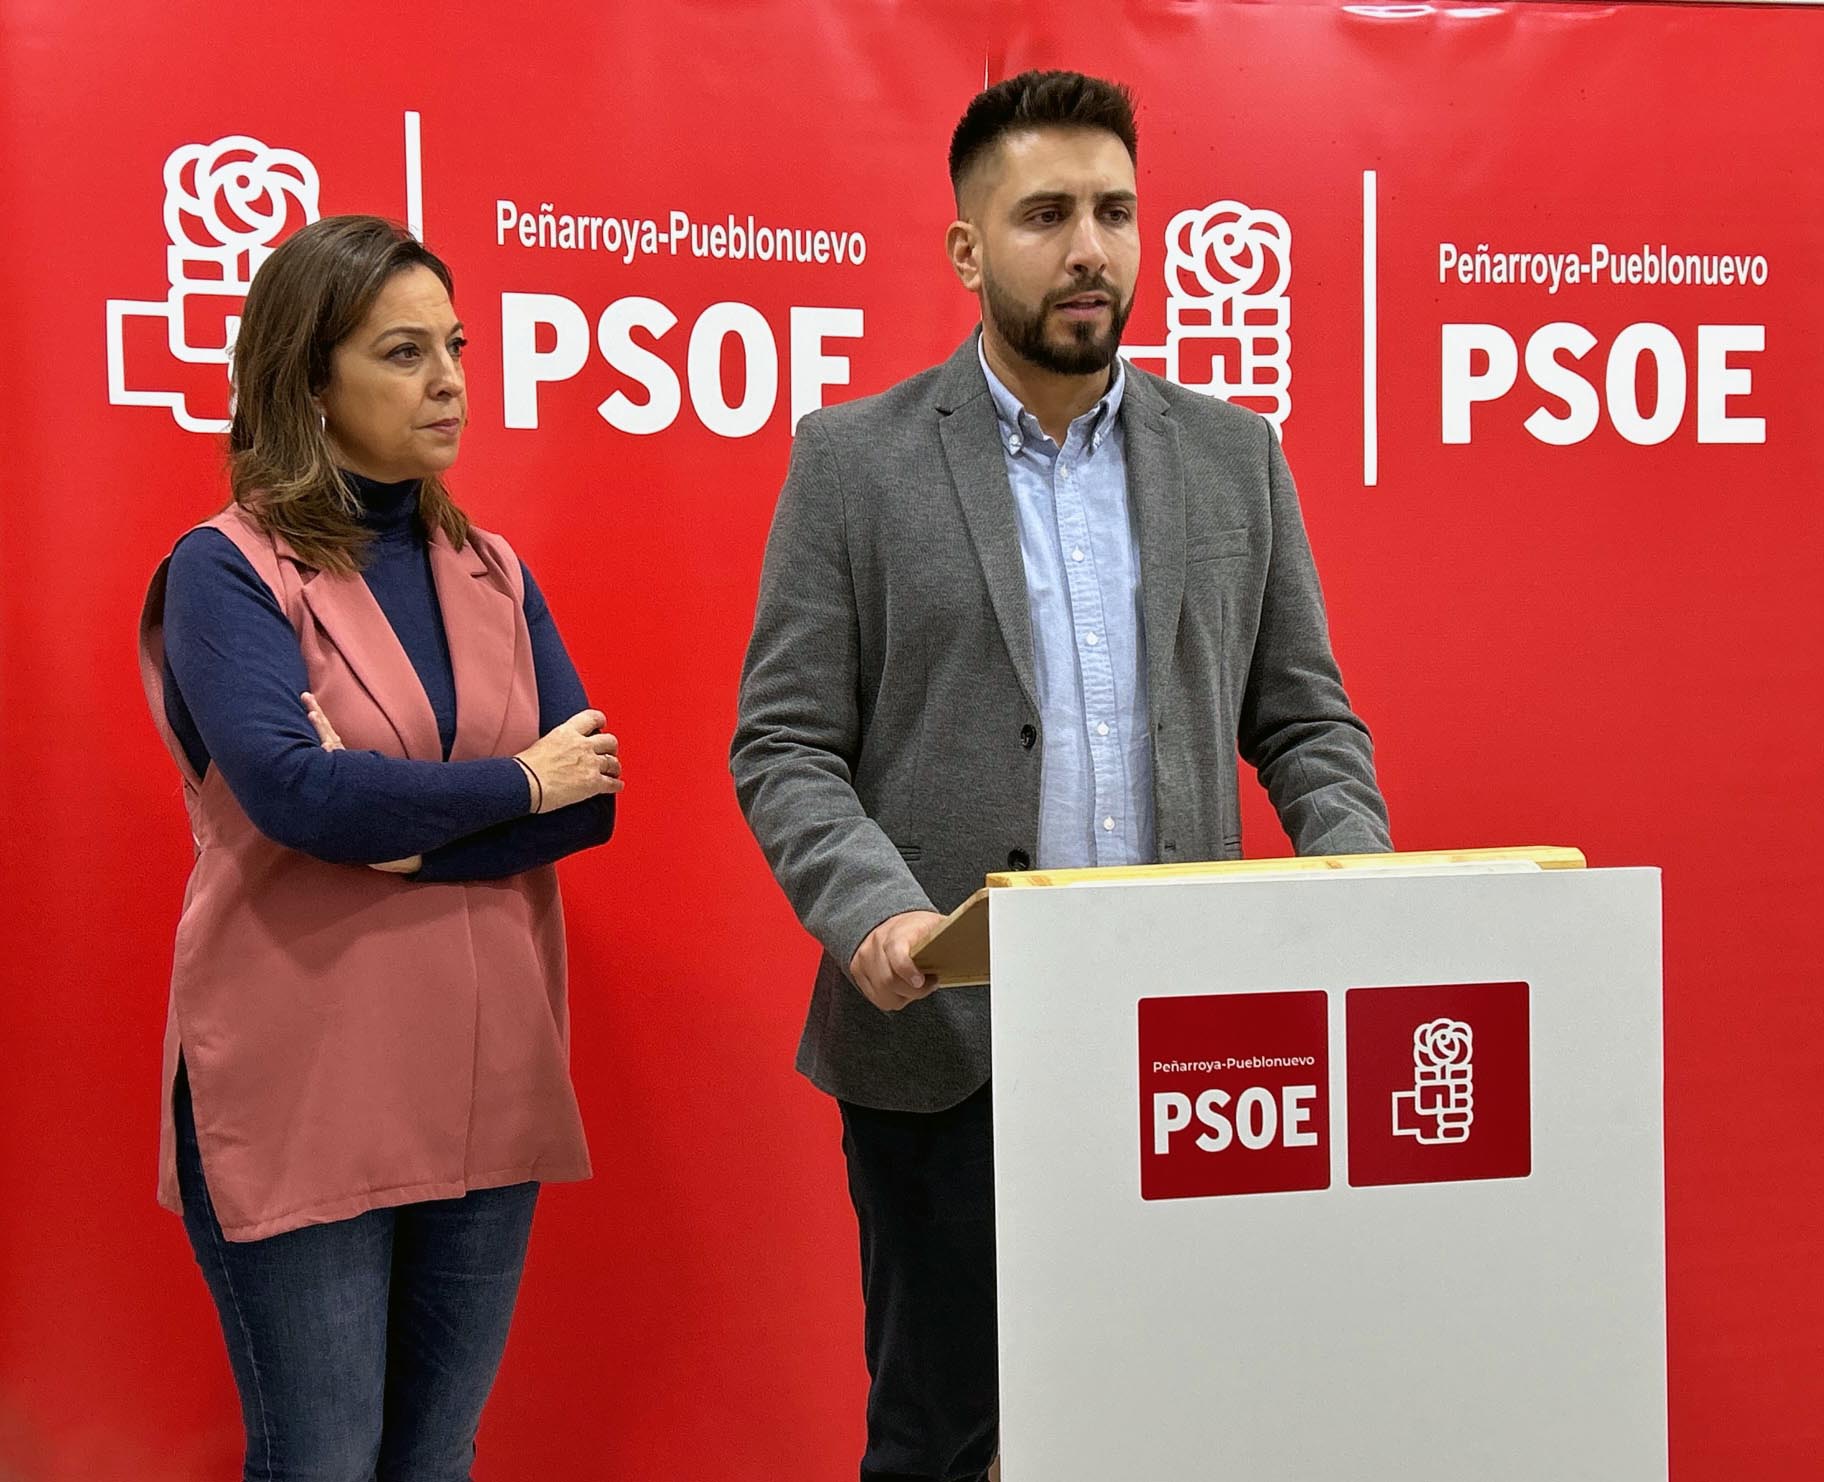 El alcalde de Peñarroya clama justicia: La Junta de Andalucía abandona con inversiones insuficientes, promesas incumplidas y falta de compromiso en presupuestos cruciales